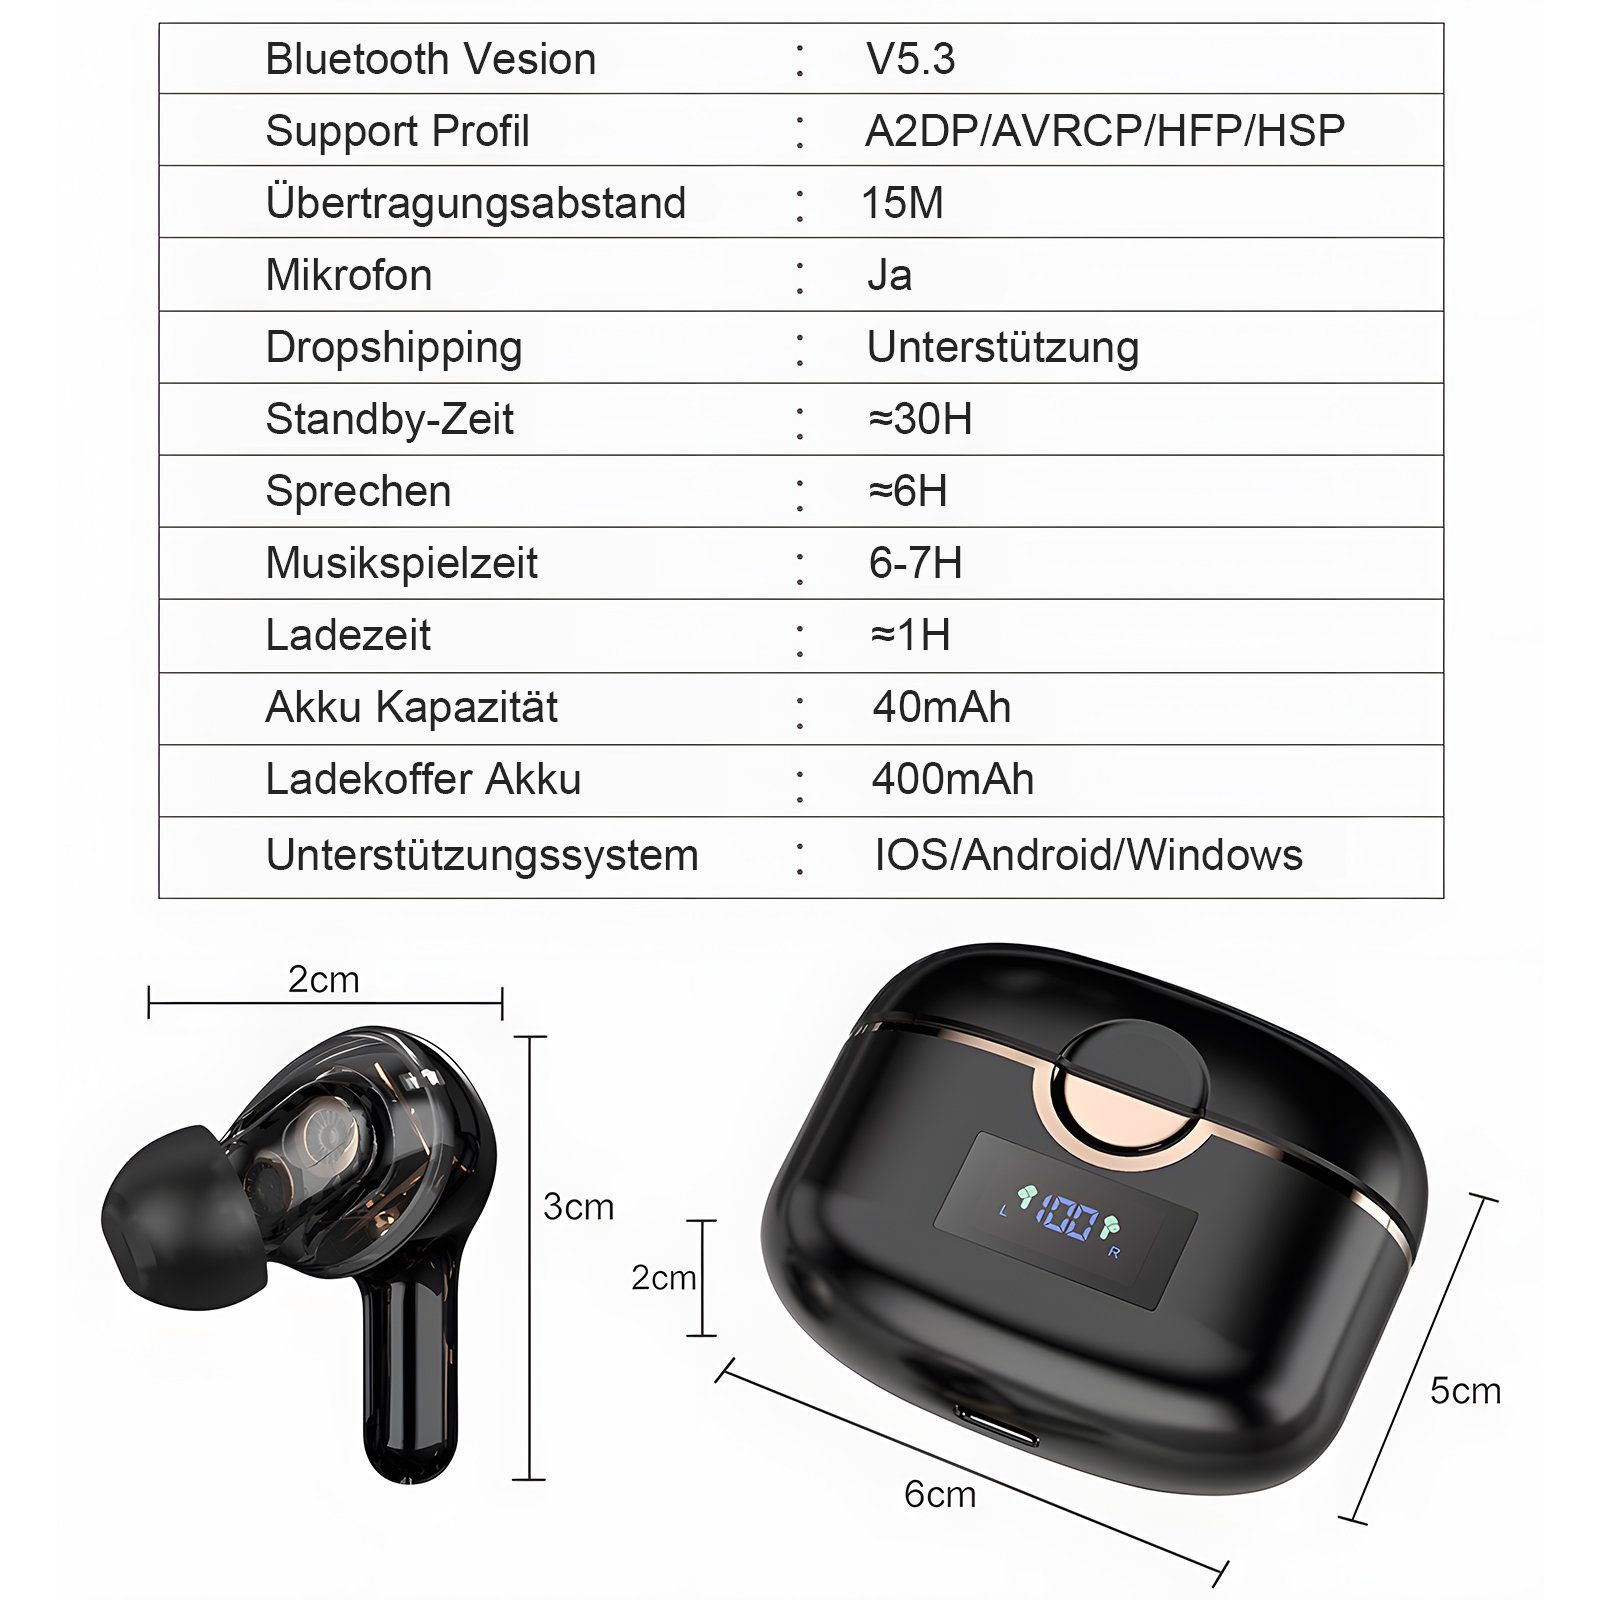 Schwarz ANC Stunden (Sprachassistent, Musikspielzeit) 5.2 Standby-Zeit, In-Ear-Kopfhörer Gerauschreduzierungsfunktion Bluetooth Kabellos Kopfhörer Bluetooth mit HIFI-Stereo, 30-Stunden Ladefach Headset IPX5, 7 Rauschunterdrückungsfunktion, EXTSUD LED-Anzeige,